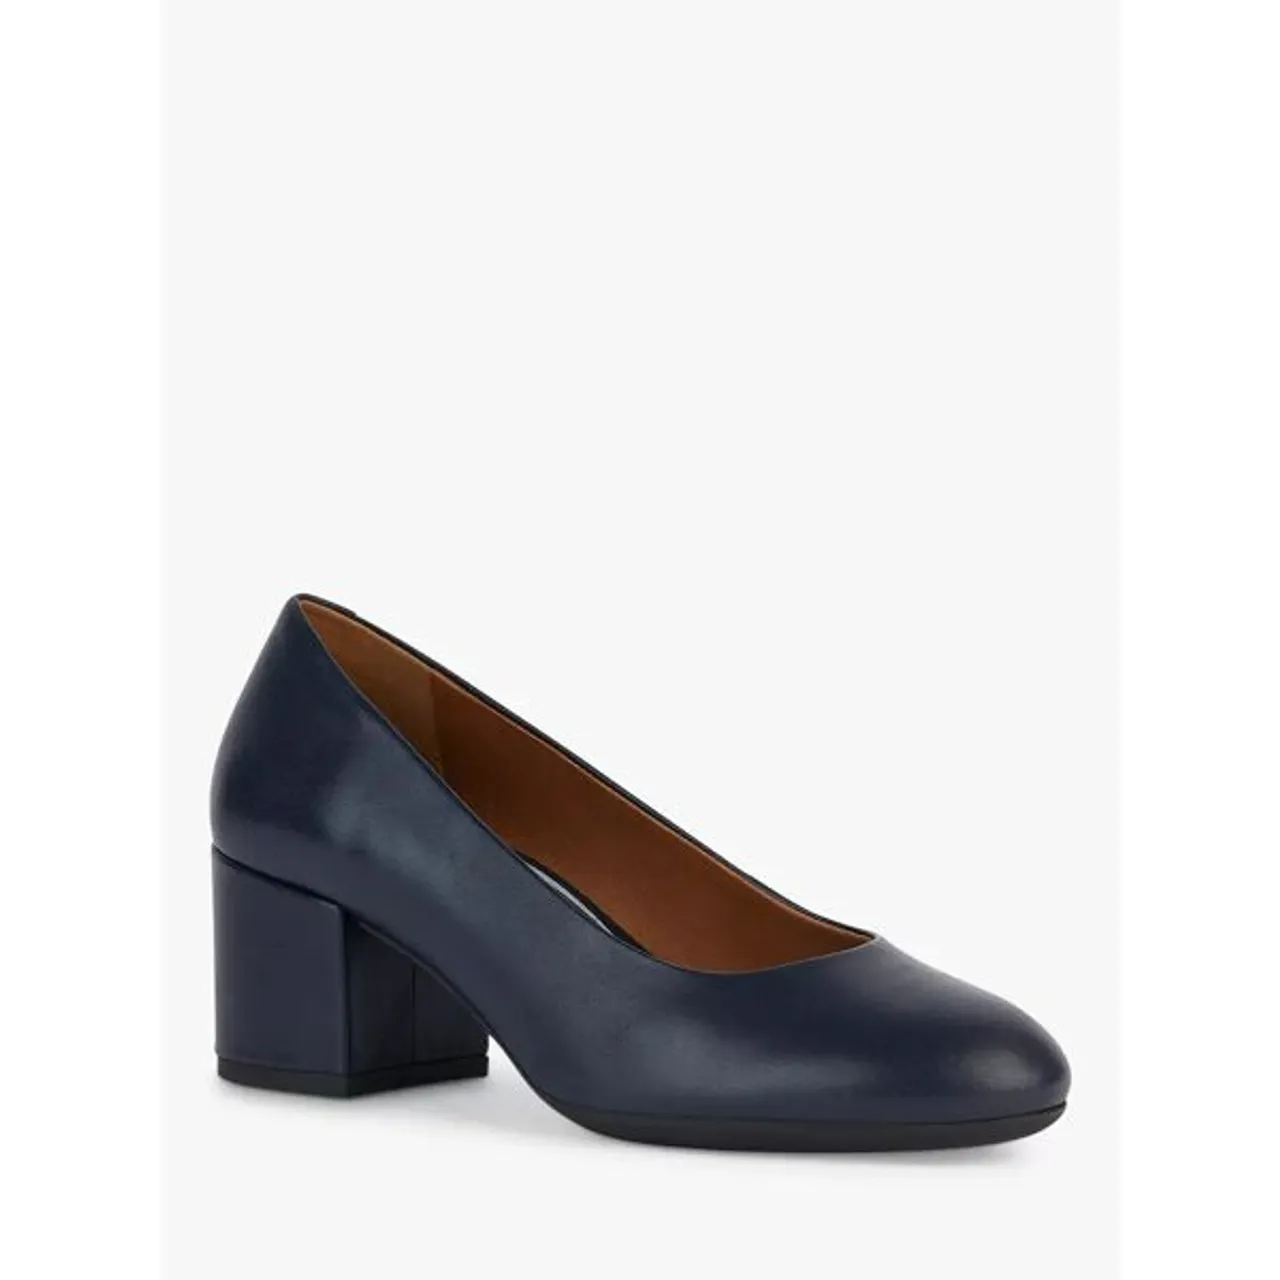 Geox Eleana Block Heel Court Shoes, Navy - Navy - Female